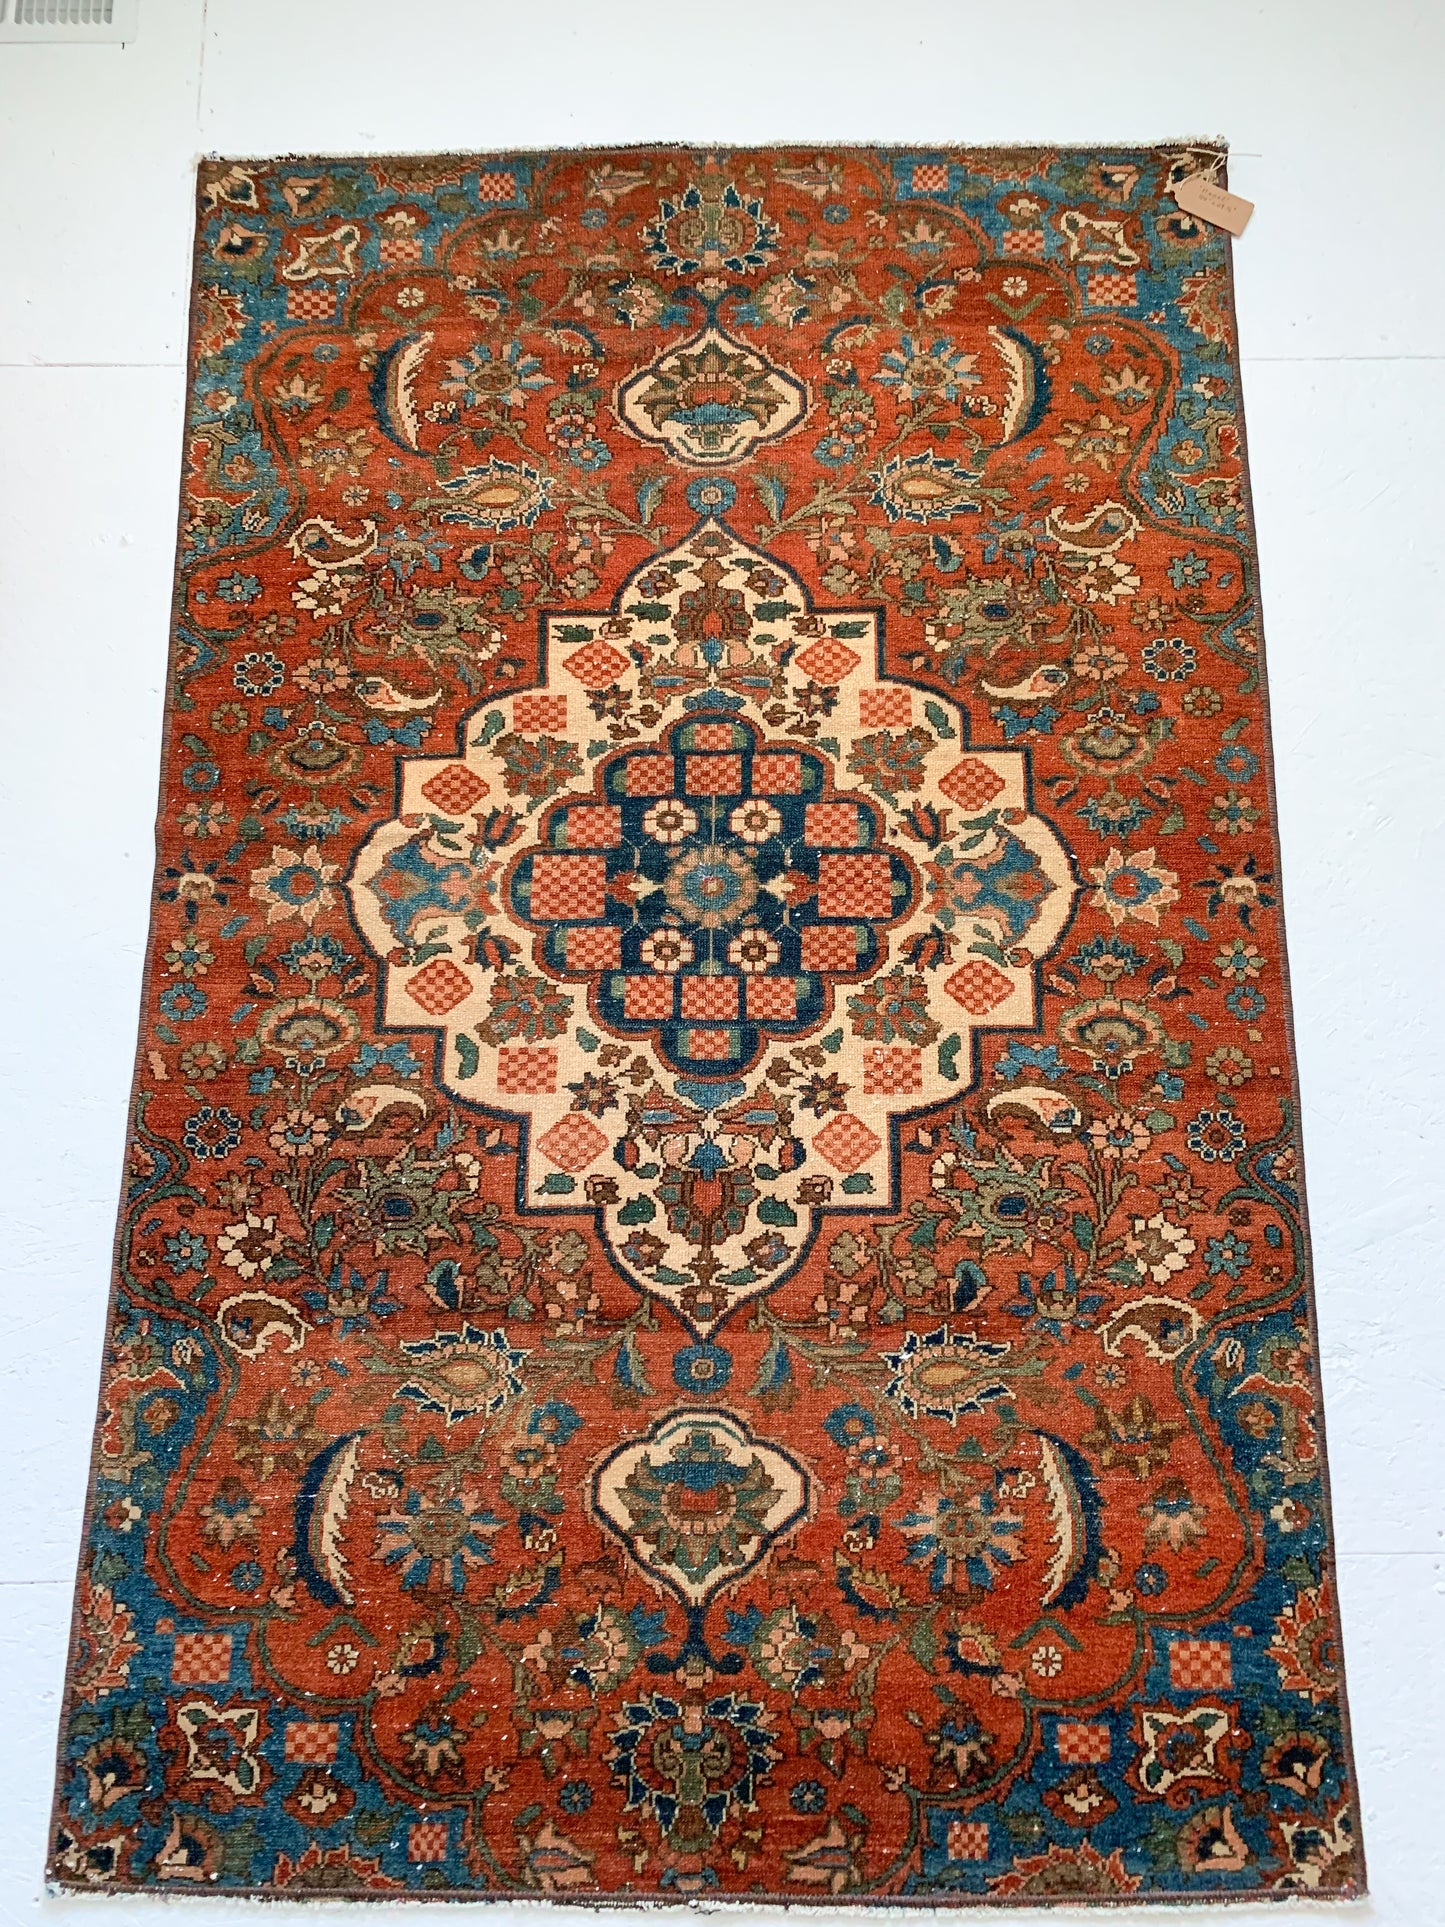 Hazel - 3.7' x 5.8' Vintage Persian Area Rug